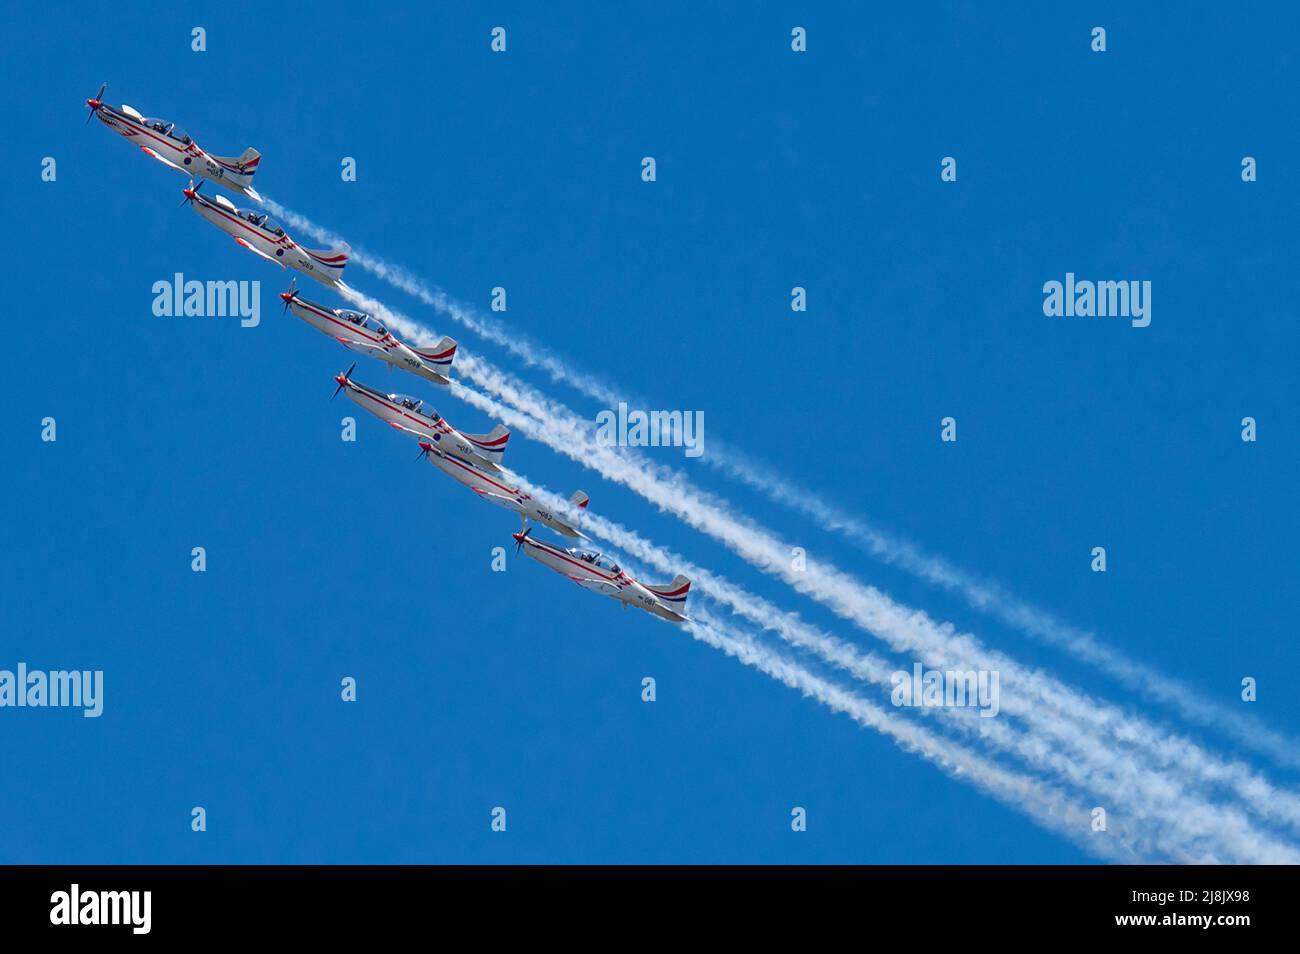 (220516) -- ZADAR, le 16 mai 2022 (Xinhua) -- l'équipe de voltige aérienne croate Wings of Storm se produit lors d'un spectacle à Zadar, en Croatie, le 16 mai 2022. (Dino Stanin/PIXSELL via Xinhua) Banque D'Images